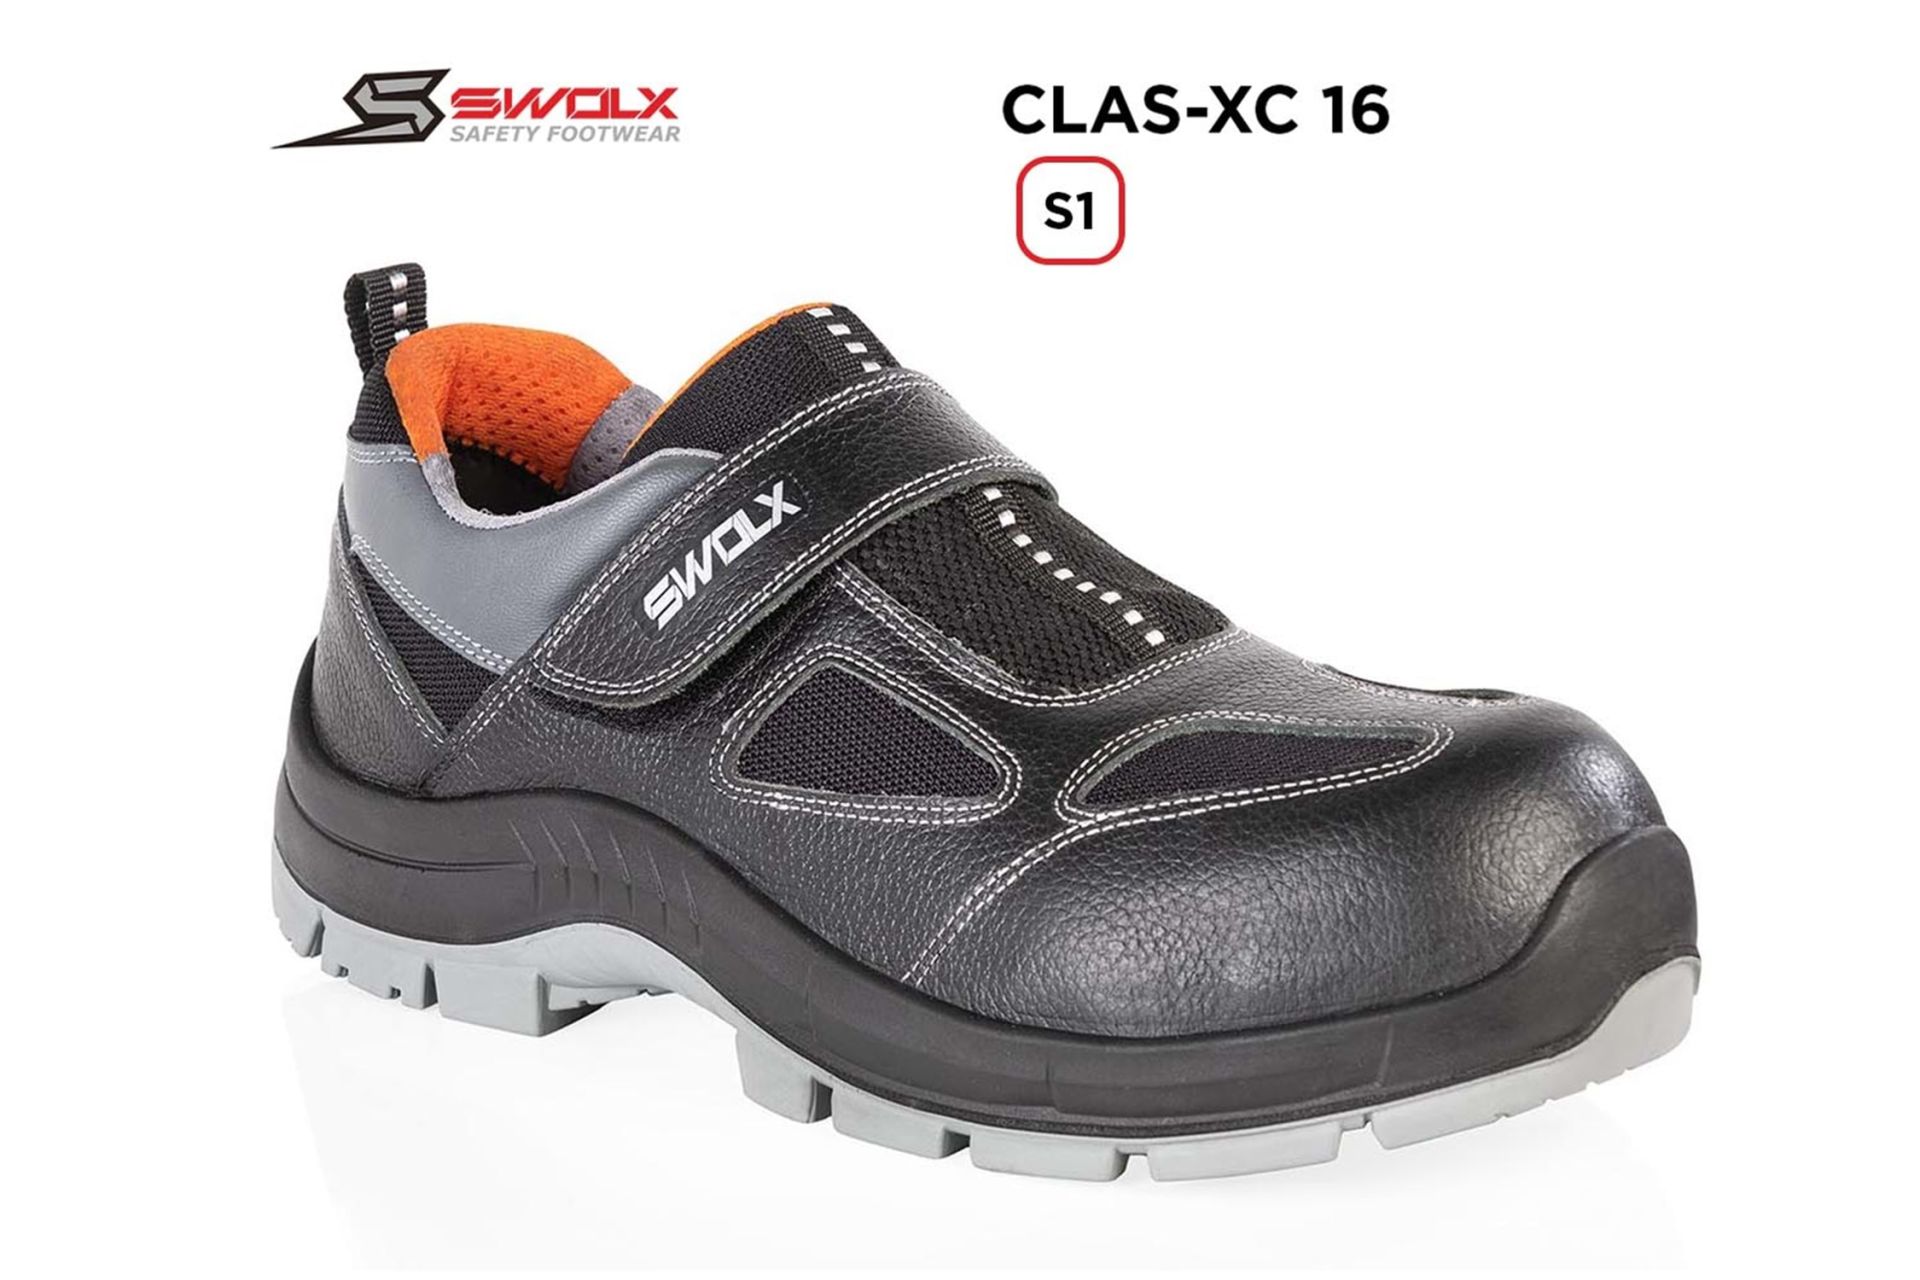 SWOLX Clas-Xc 16 S1 İş Ayakkabısı